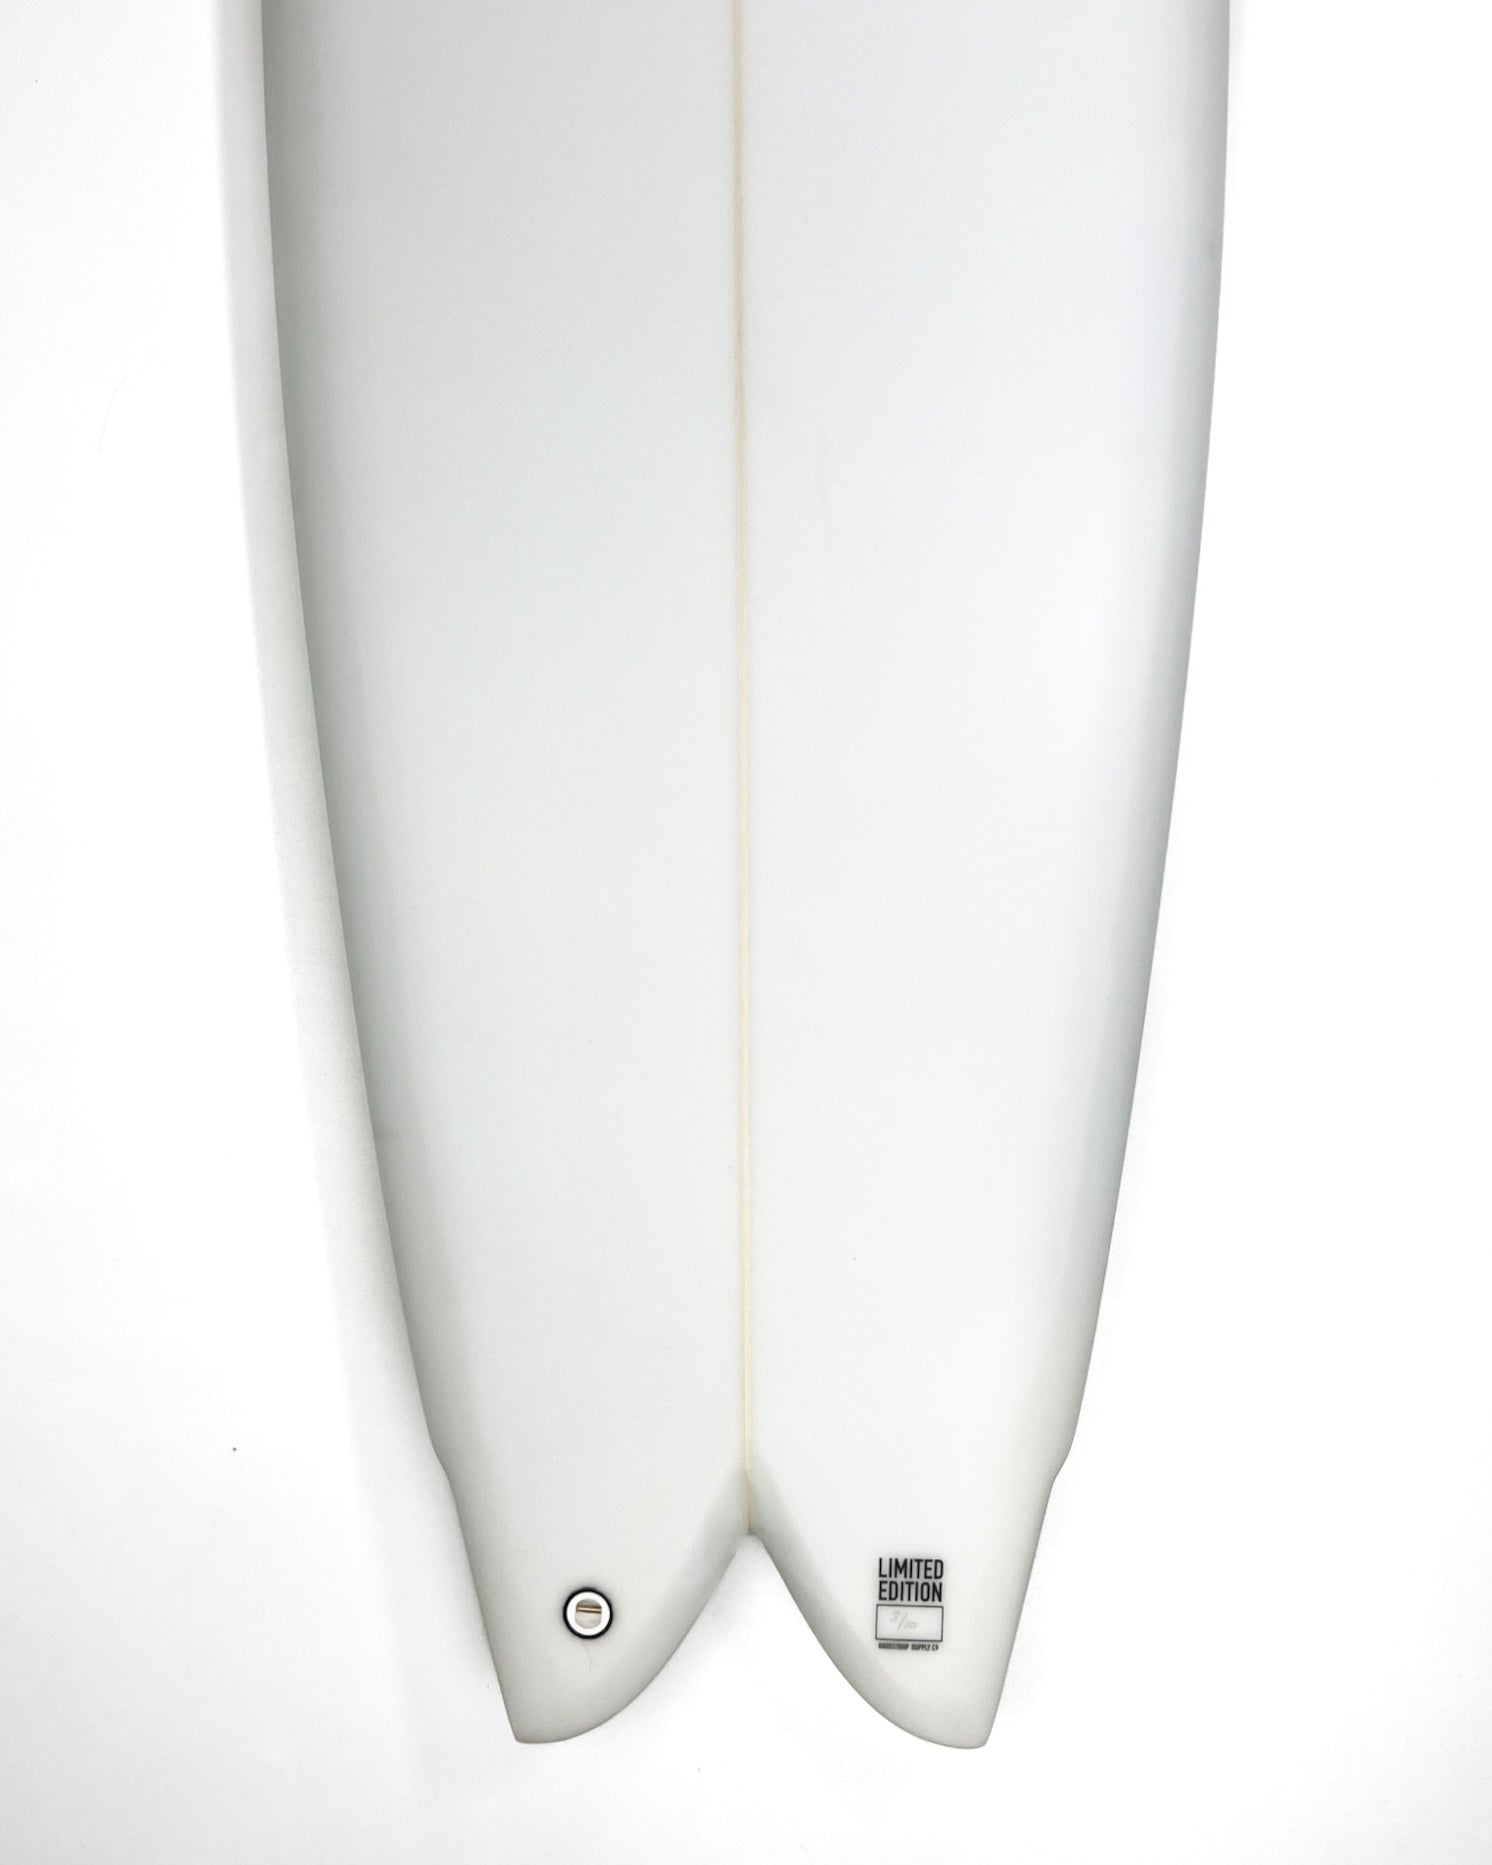 Ghost Ship x Josh Peterson Rorschach Fish Surfboard 5'10" - GHOSTSHIP.Supply